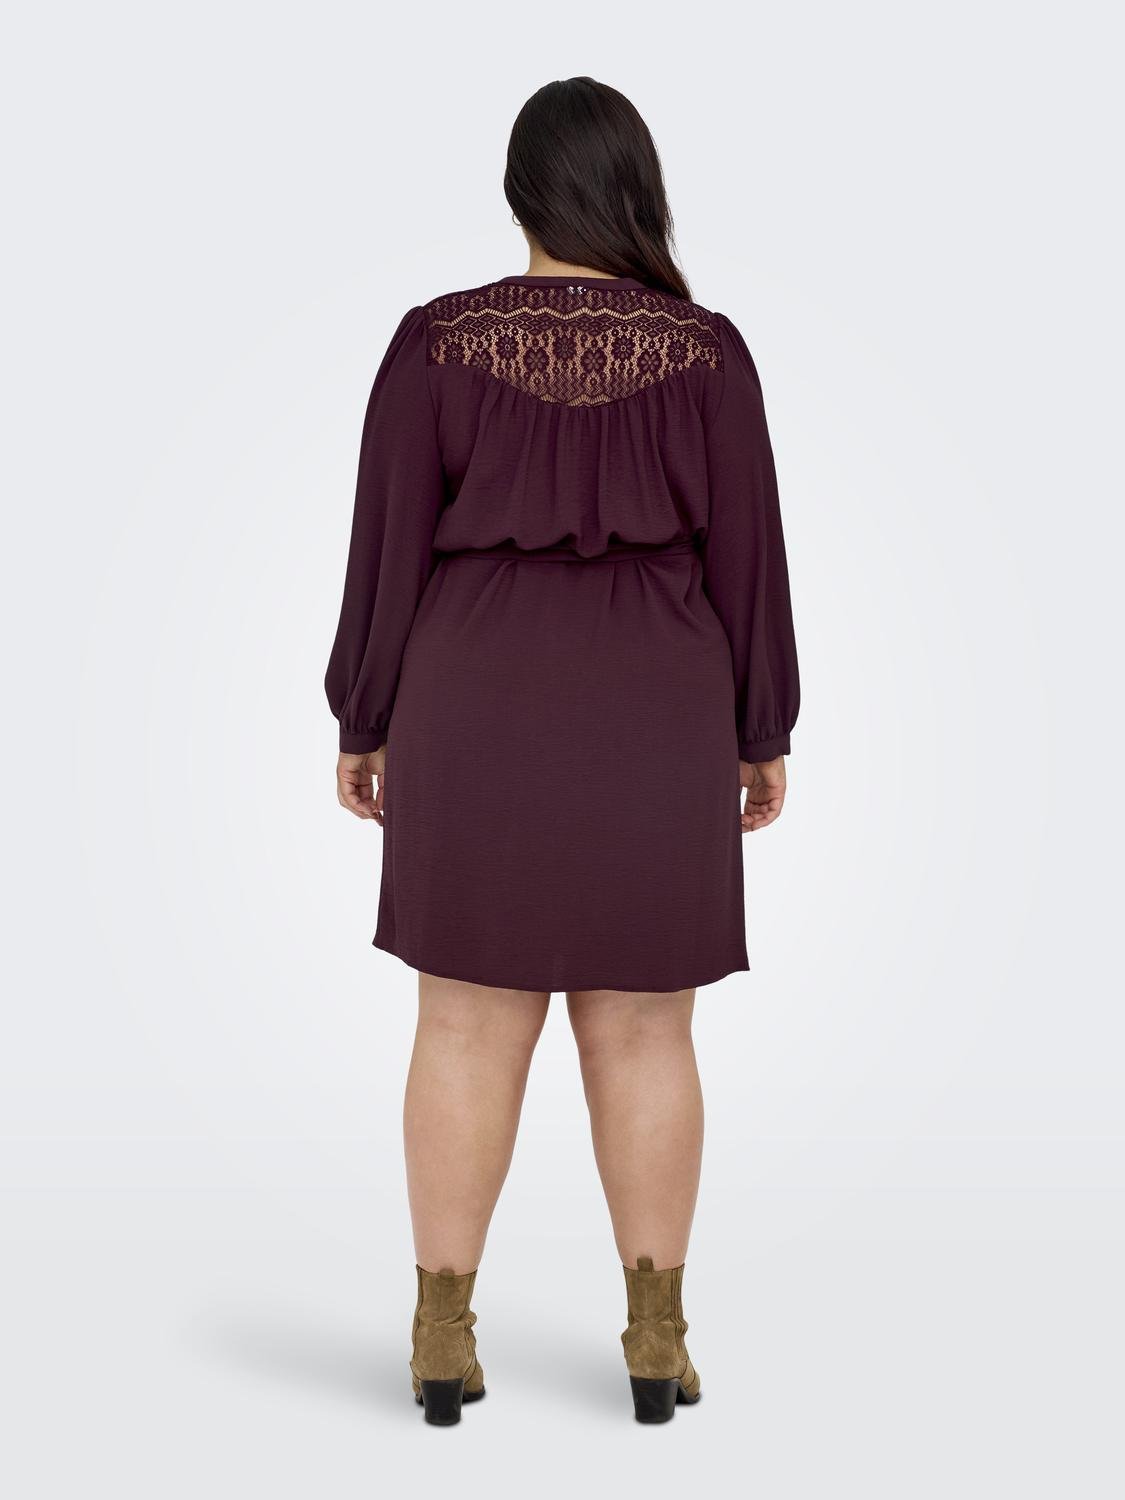 ONLY Standard Fit Shirt collar Long dress -Windsor Wine - 15310494